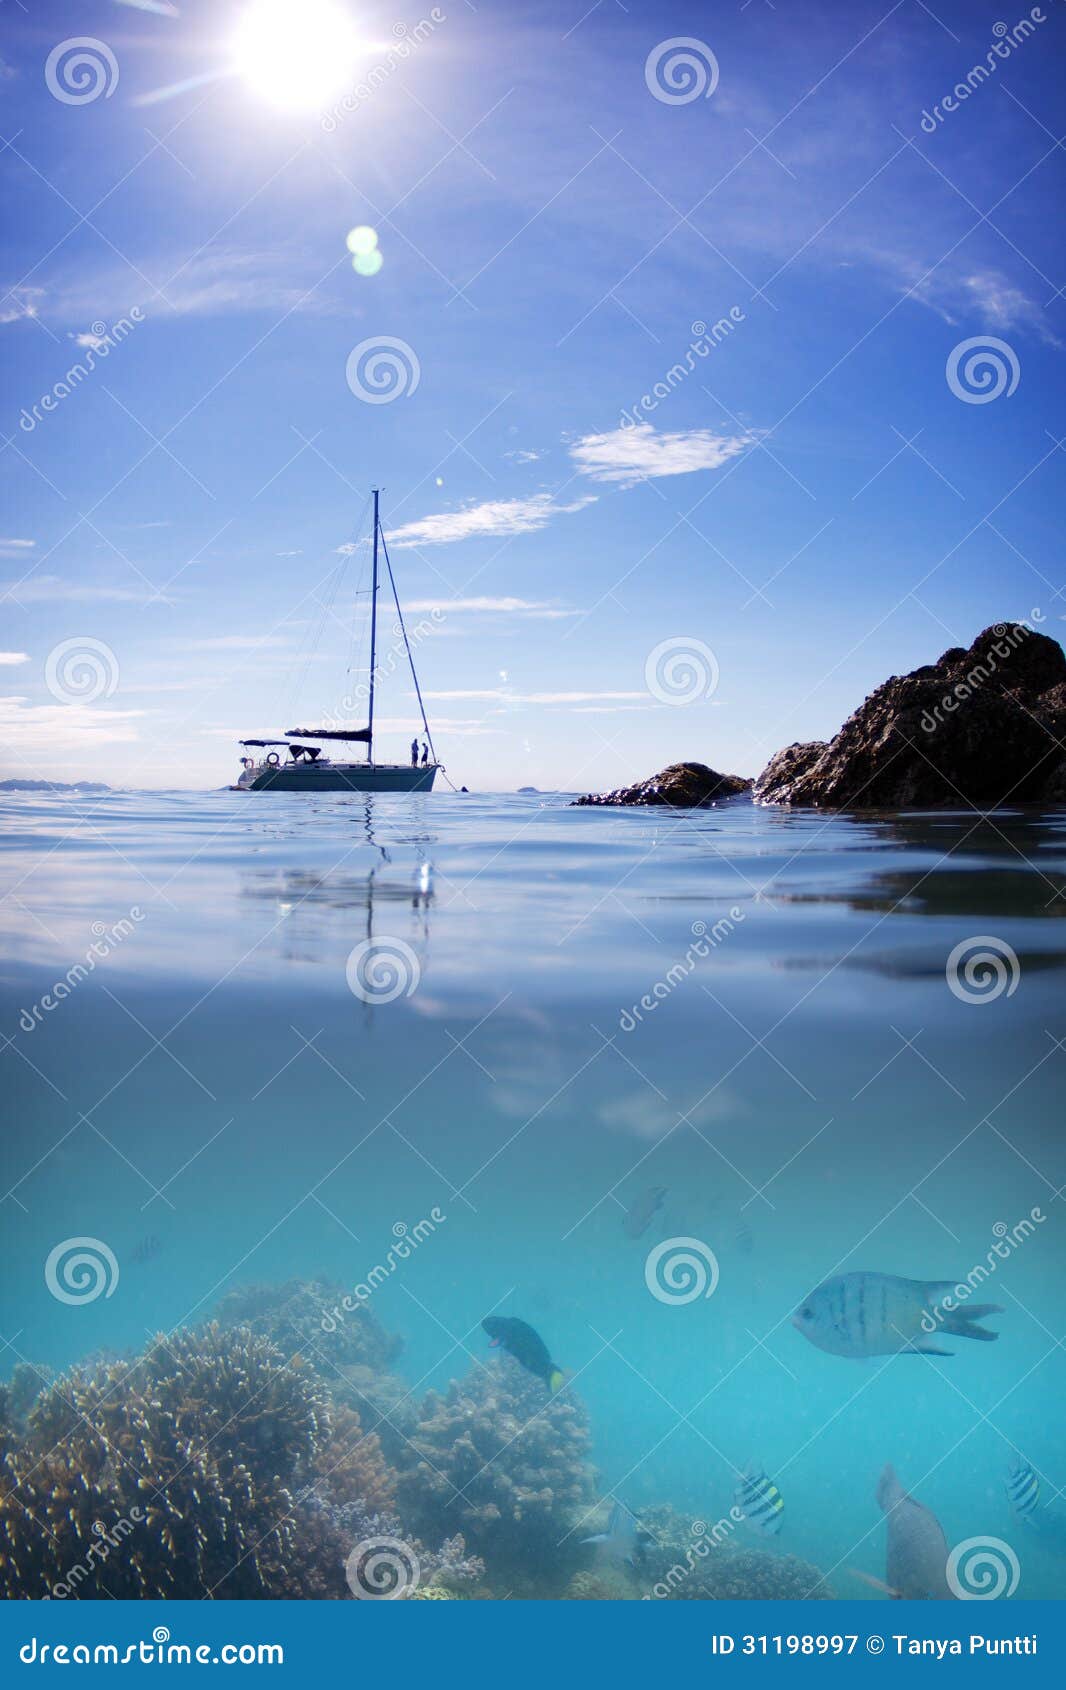 Vatten och himmel för sol för Coral Reef fiskfartyg. Splittring under och över fotografiet av en korallfeeffisk, ett förankrat fartyg, en sol, ett blått vatten och en himmel nära en pingstdagö.